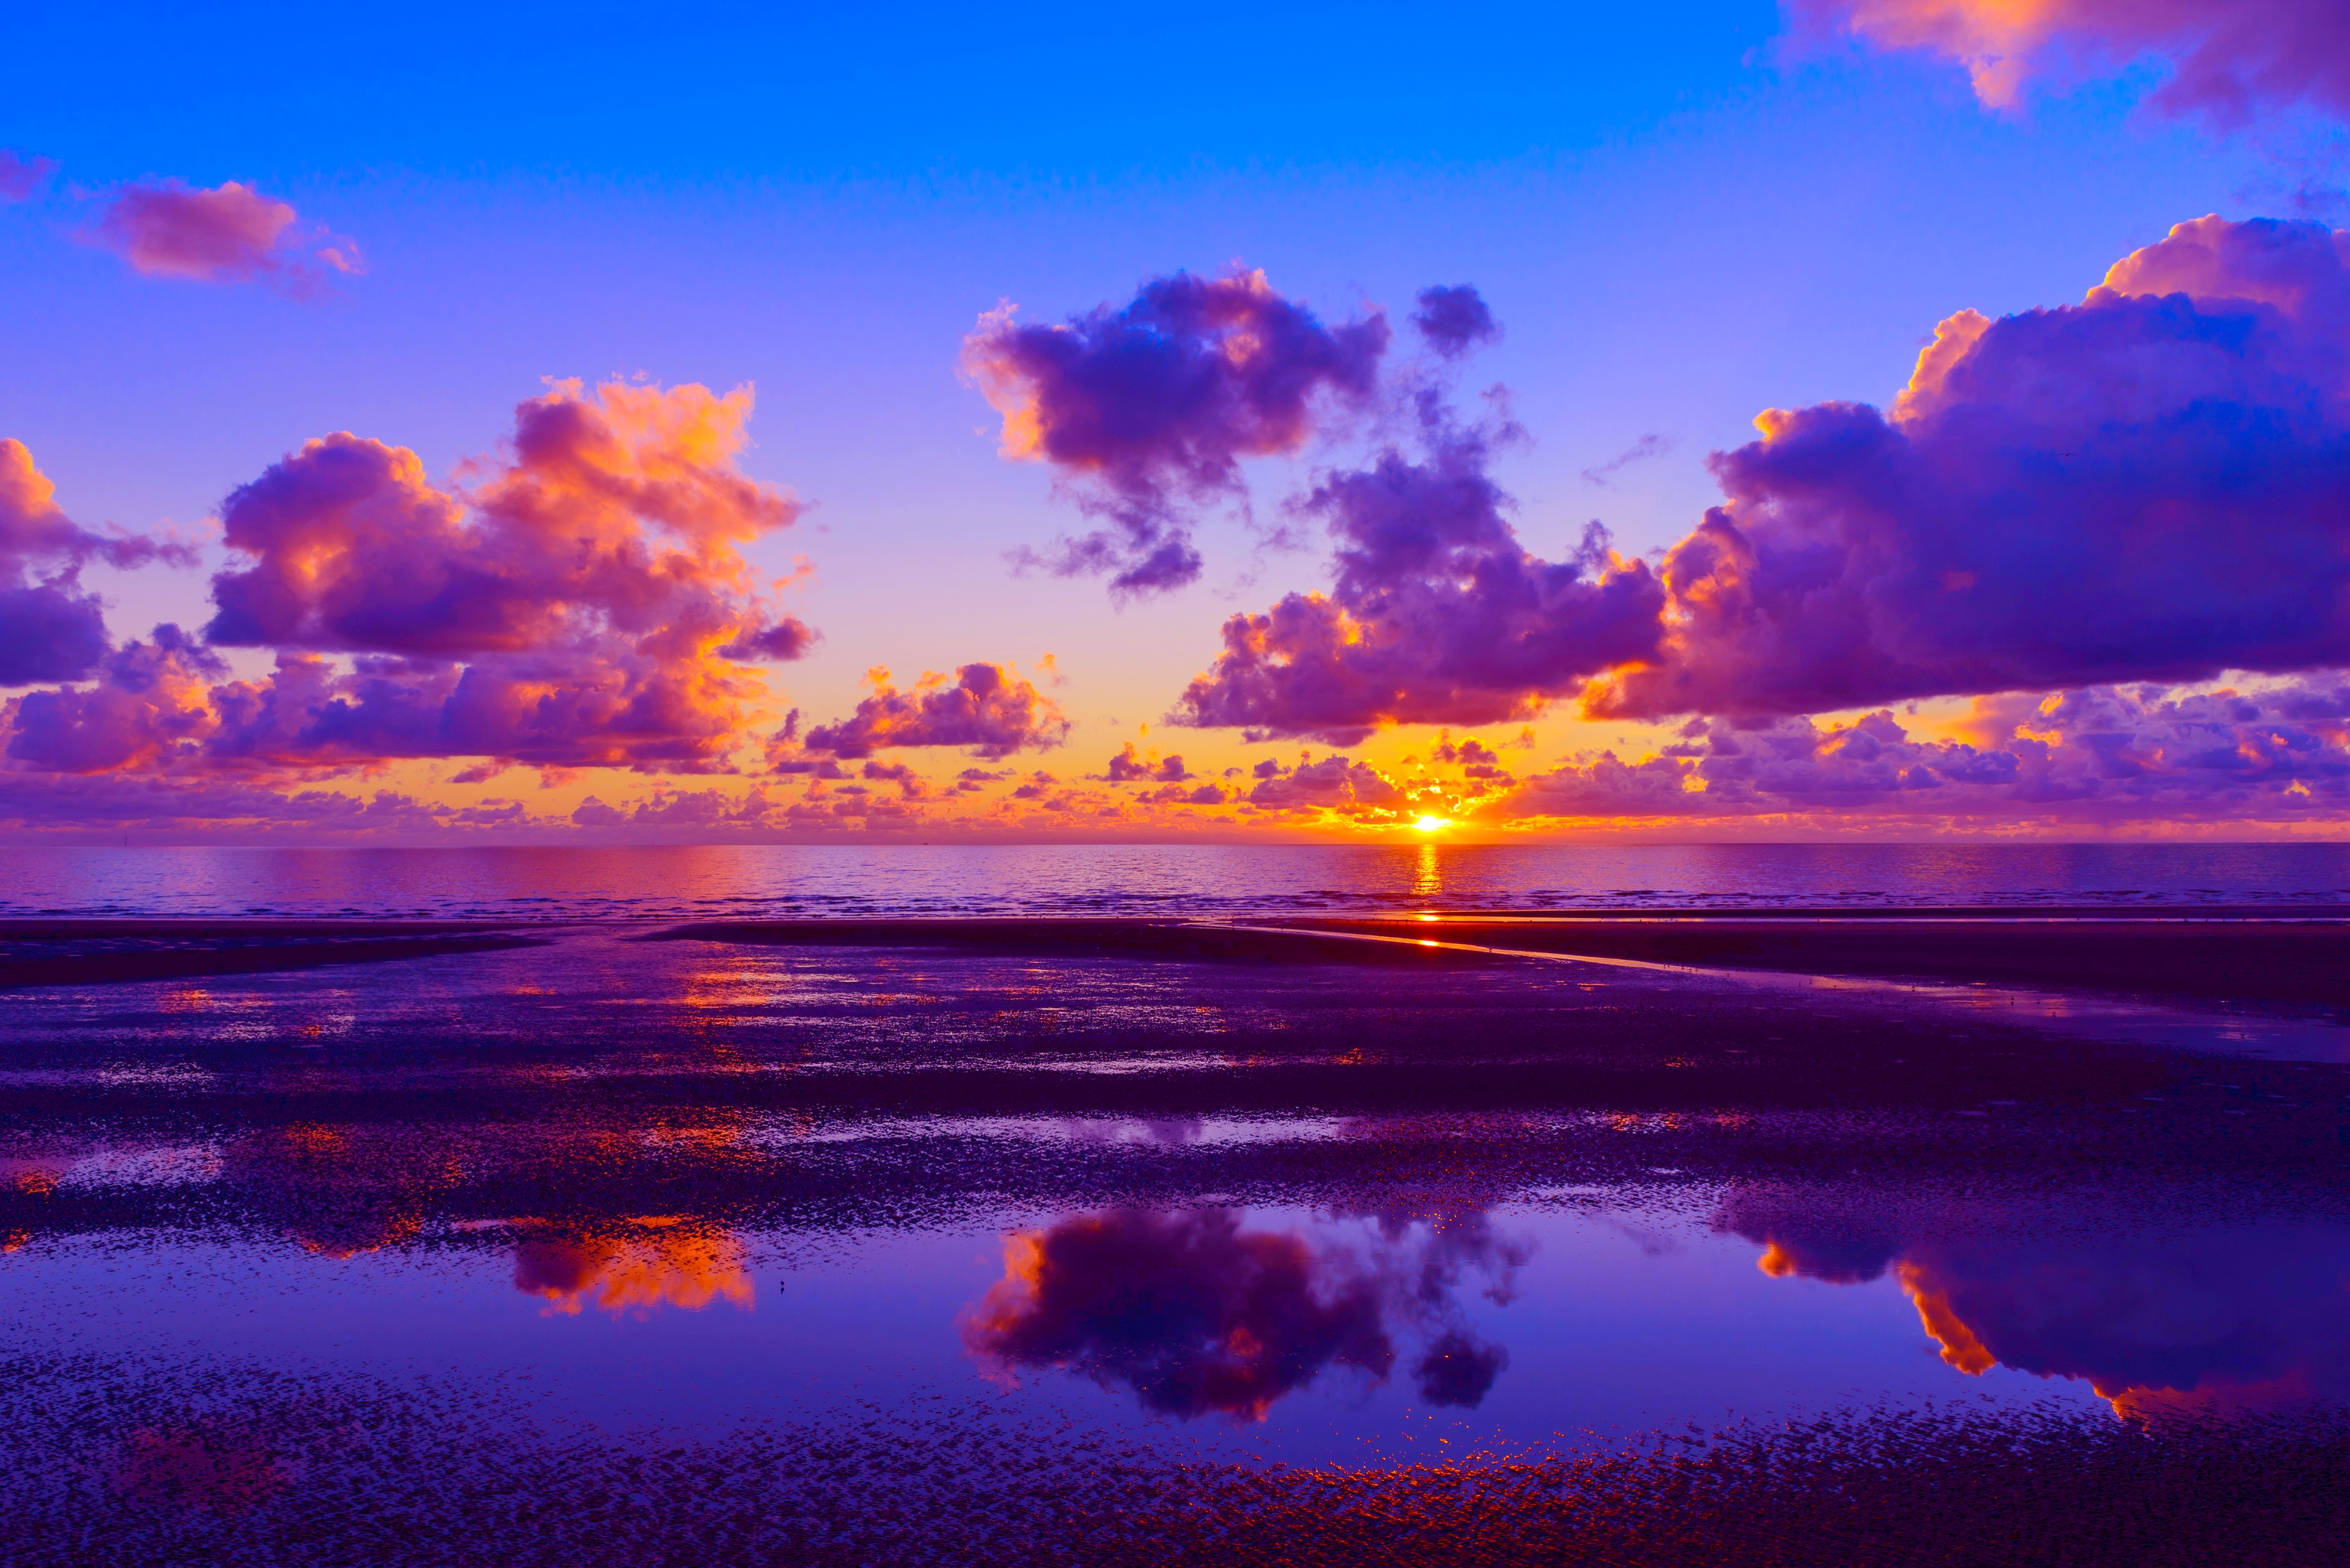 Sunset Horizon Desktop Background là một trong những hình ảnh đẹp nhất để hiển thị trên màn hình của bạn. Bạn sẽ nhìn thấy một kết hợp tuyệt đẹp giữa ánh nắng hoàng hôn và hàng dương, mang đến cảm giác yên bình và độc đáo. Hãy xem hình ảnh liên quan để tận hưởng sự đẹp và hoàn hảo.